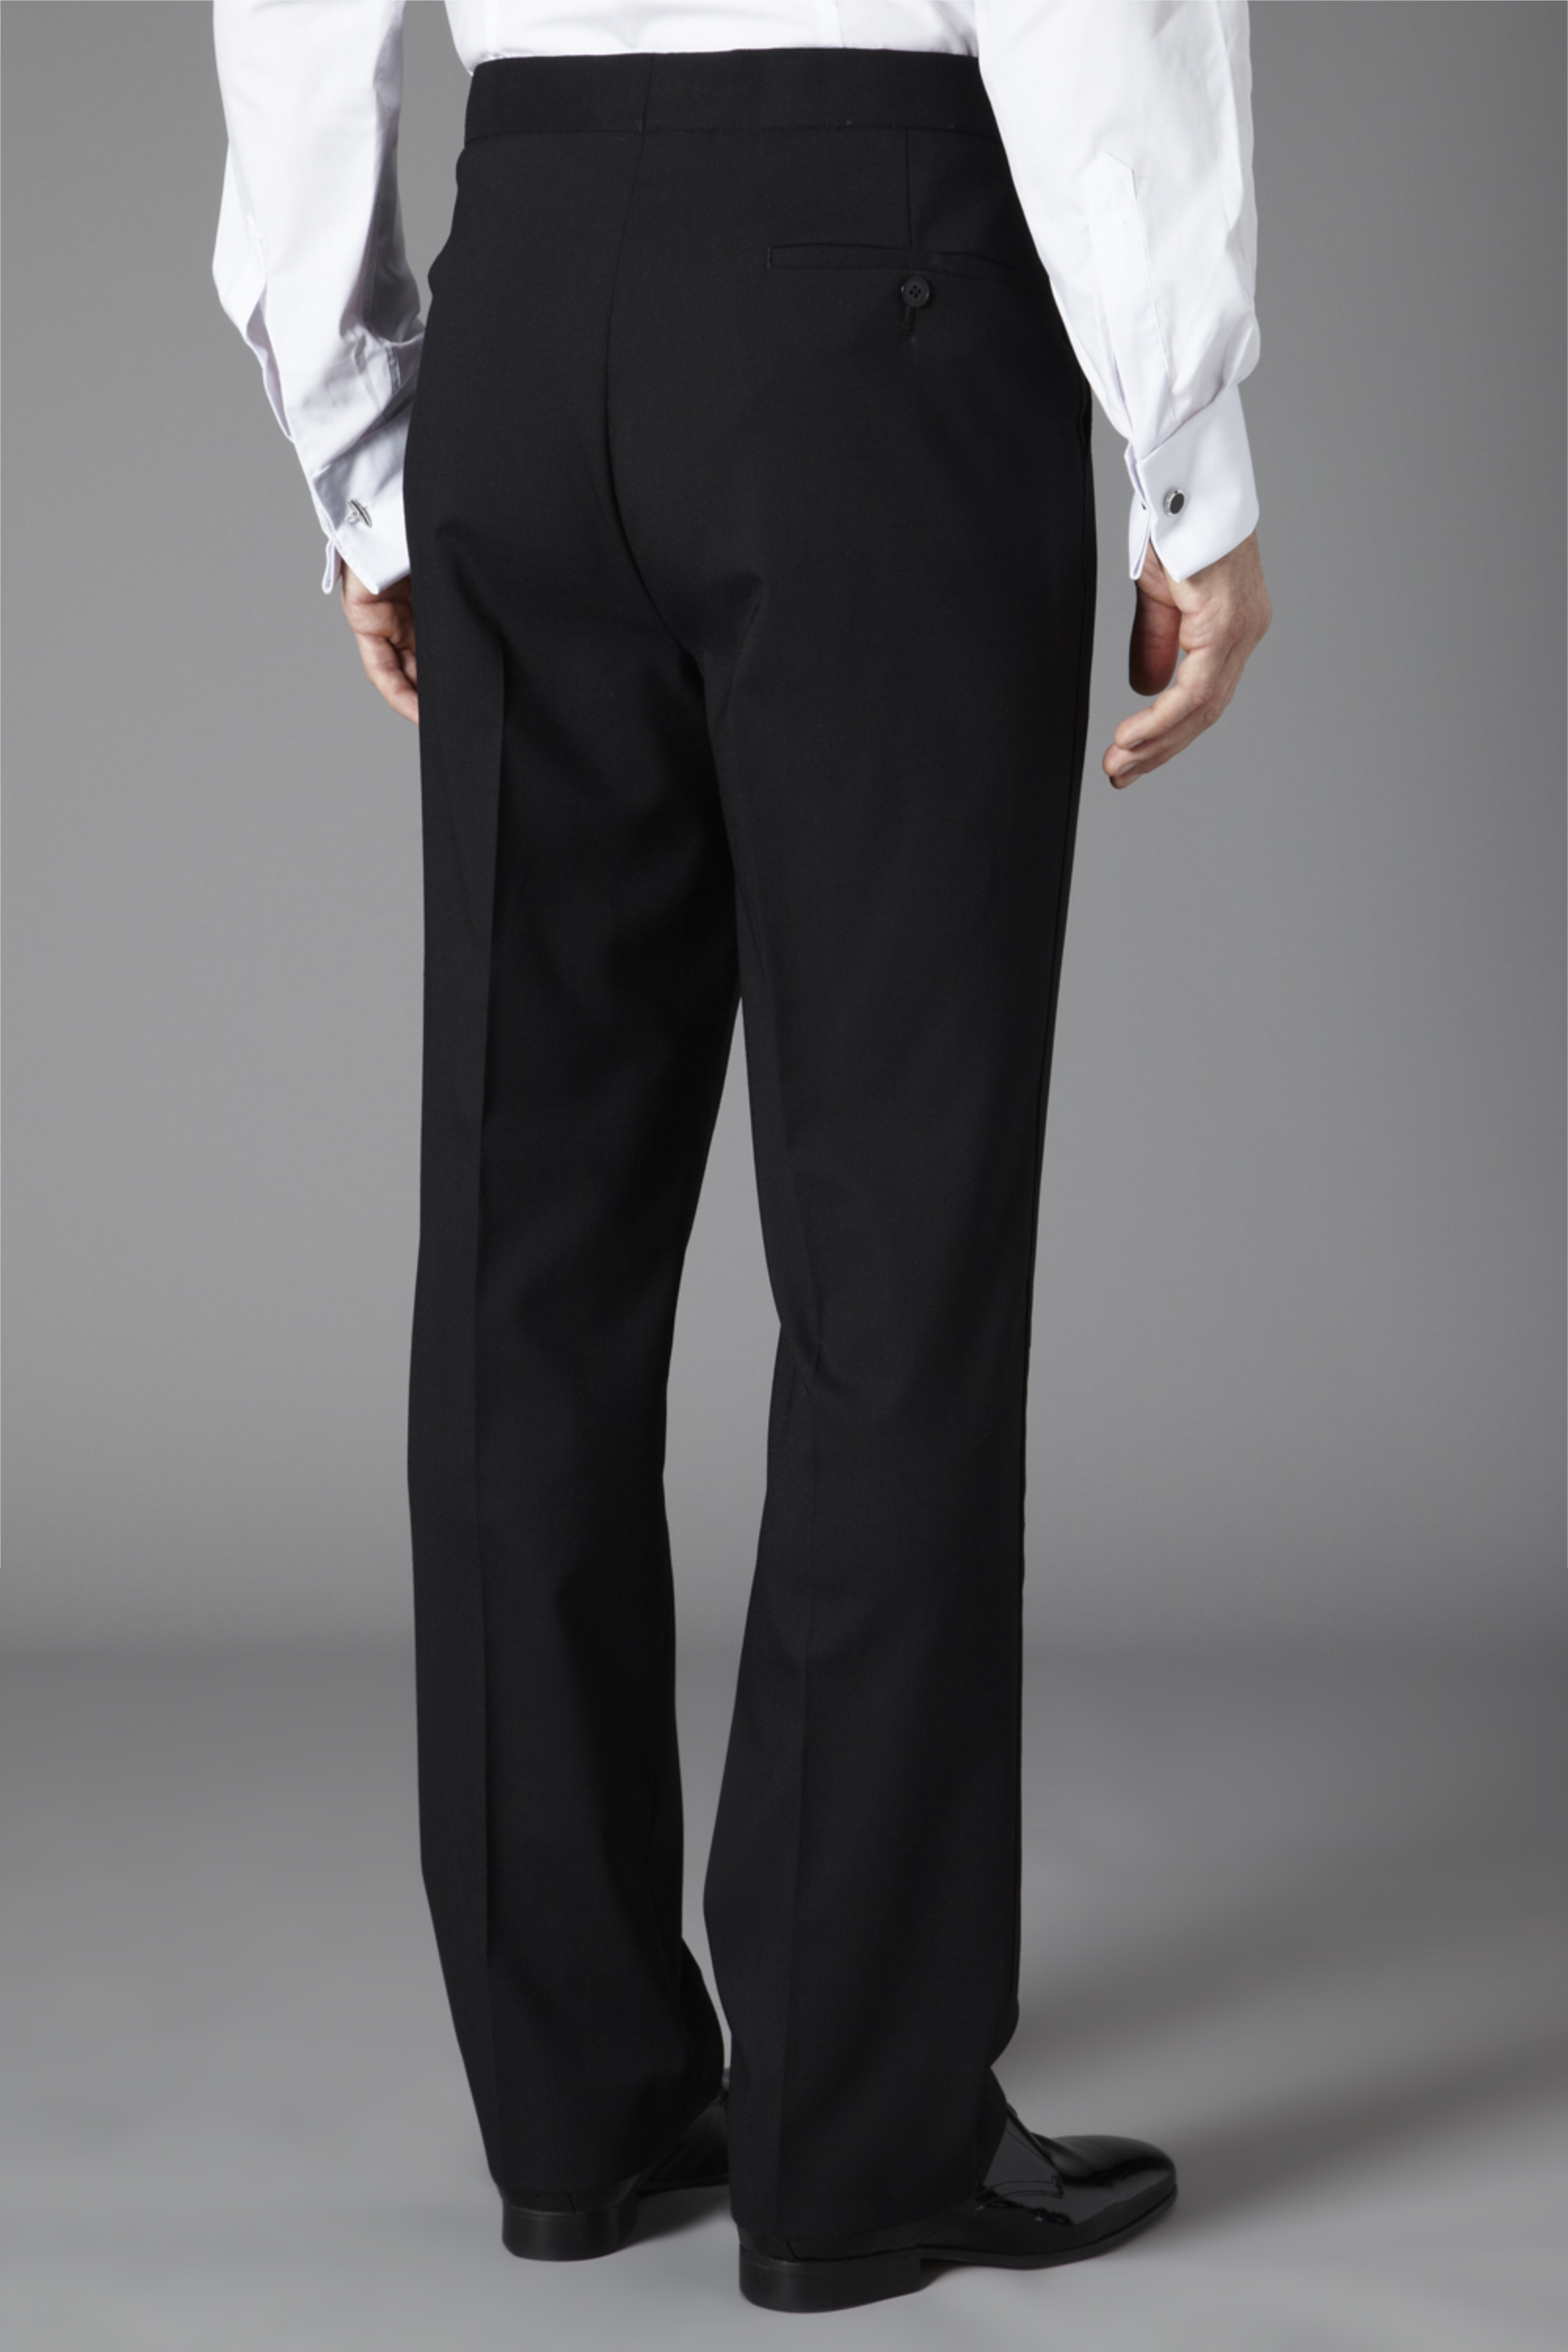 Moss Bros Regular Fit Single Pleat Eveningwear Trouser Black | Buy ...